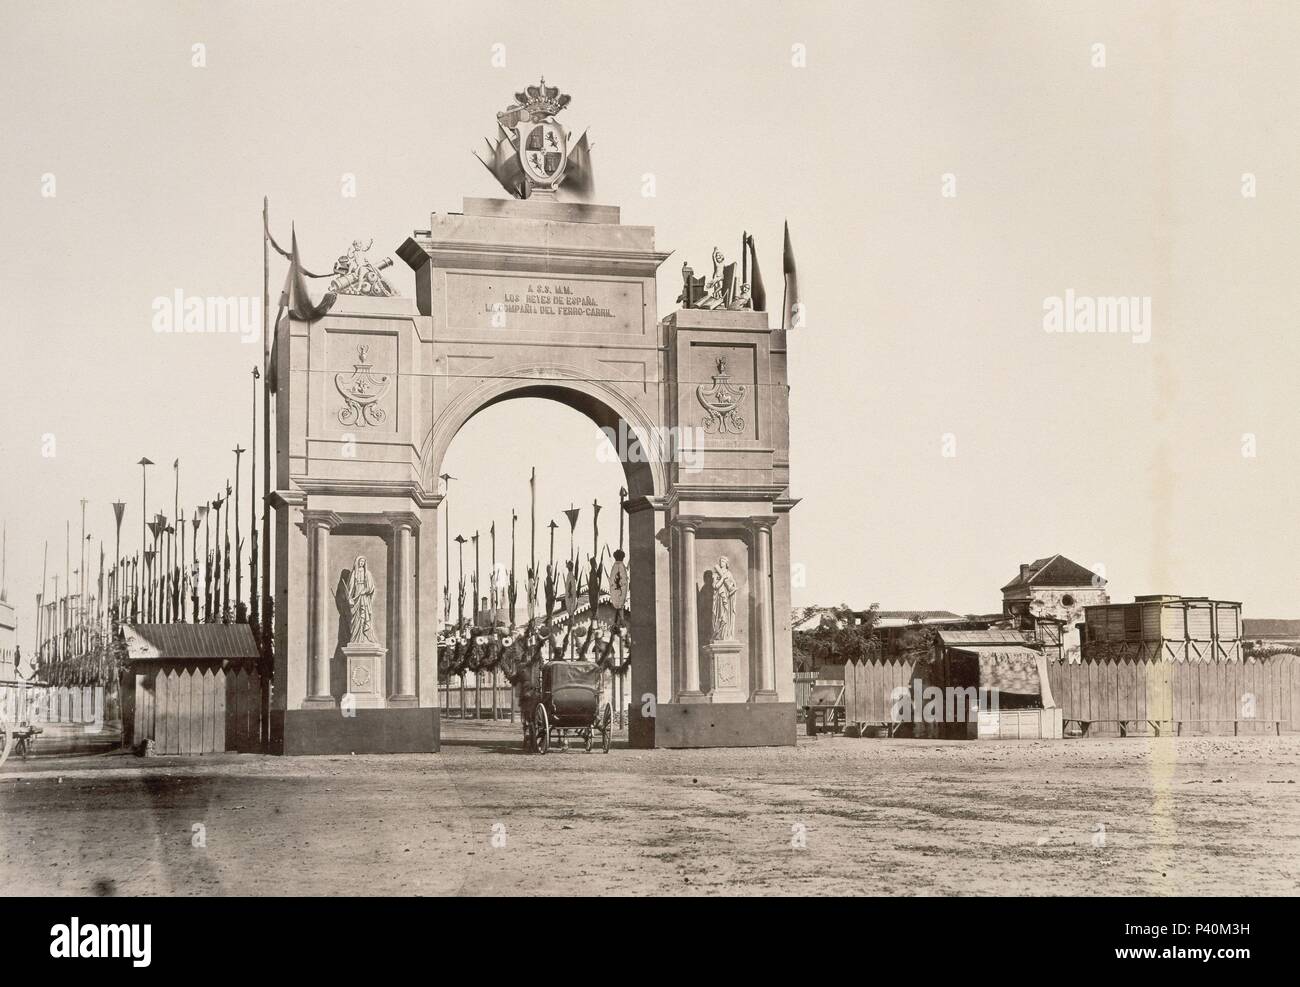 VIAJE DE LOS REYES A ANDALUCIA - ARCO DEL FERROCARRIL - SIGLO XIX - FOTOGRAFIA. Author: Charles Clifford (c. 1820-1863). Stock Photo